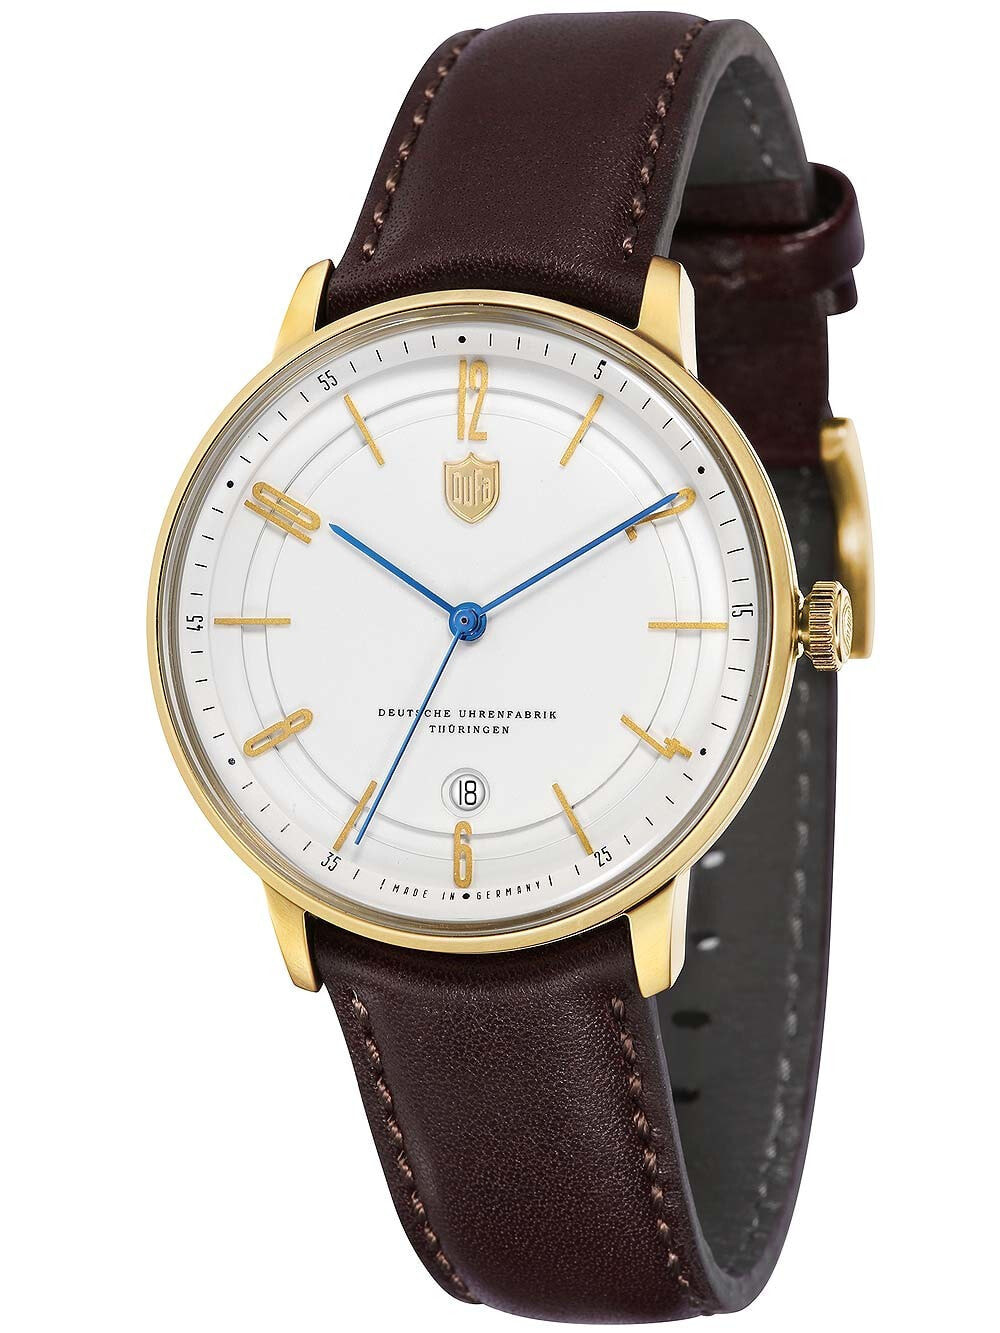 Мужские наручные часы с коричневым кожаным ремешком  Dufa DF-9016-03 Bayer Swiss Made Automatic 40mm 3 ATM